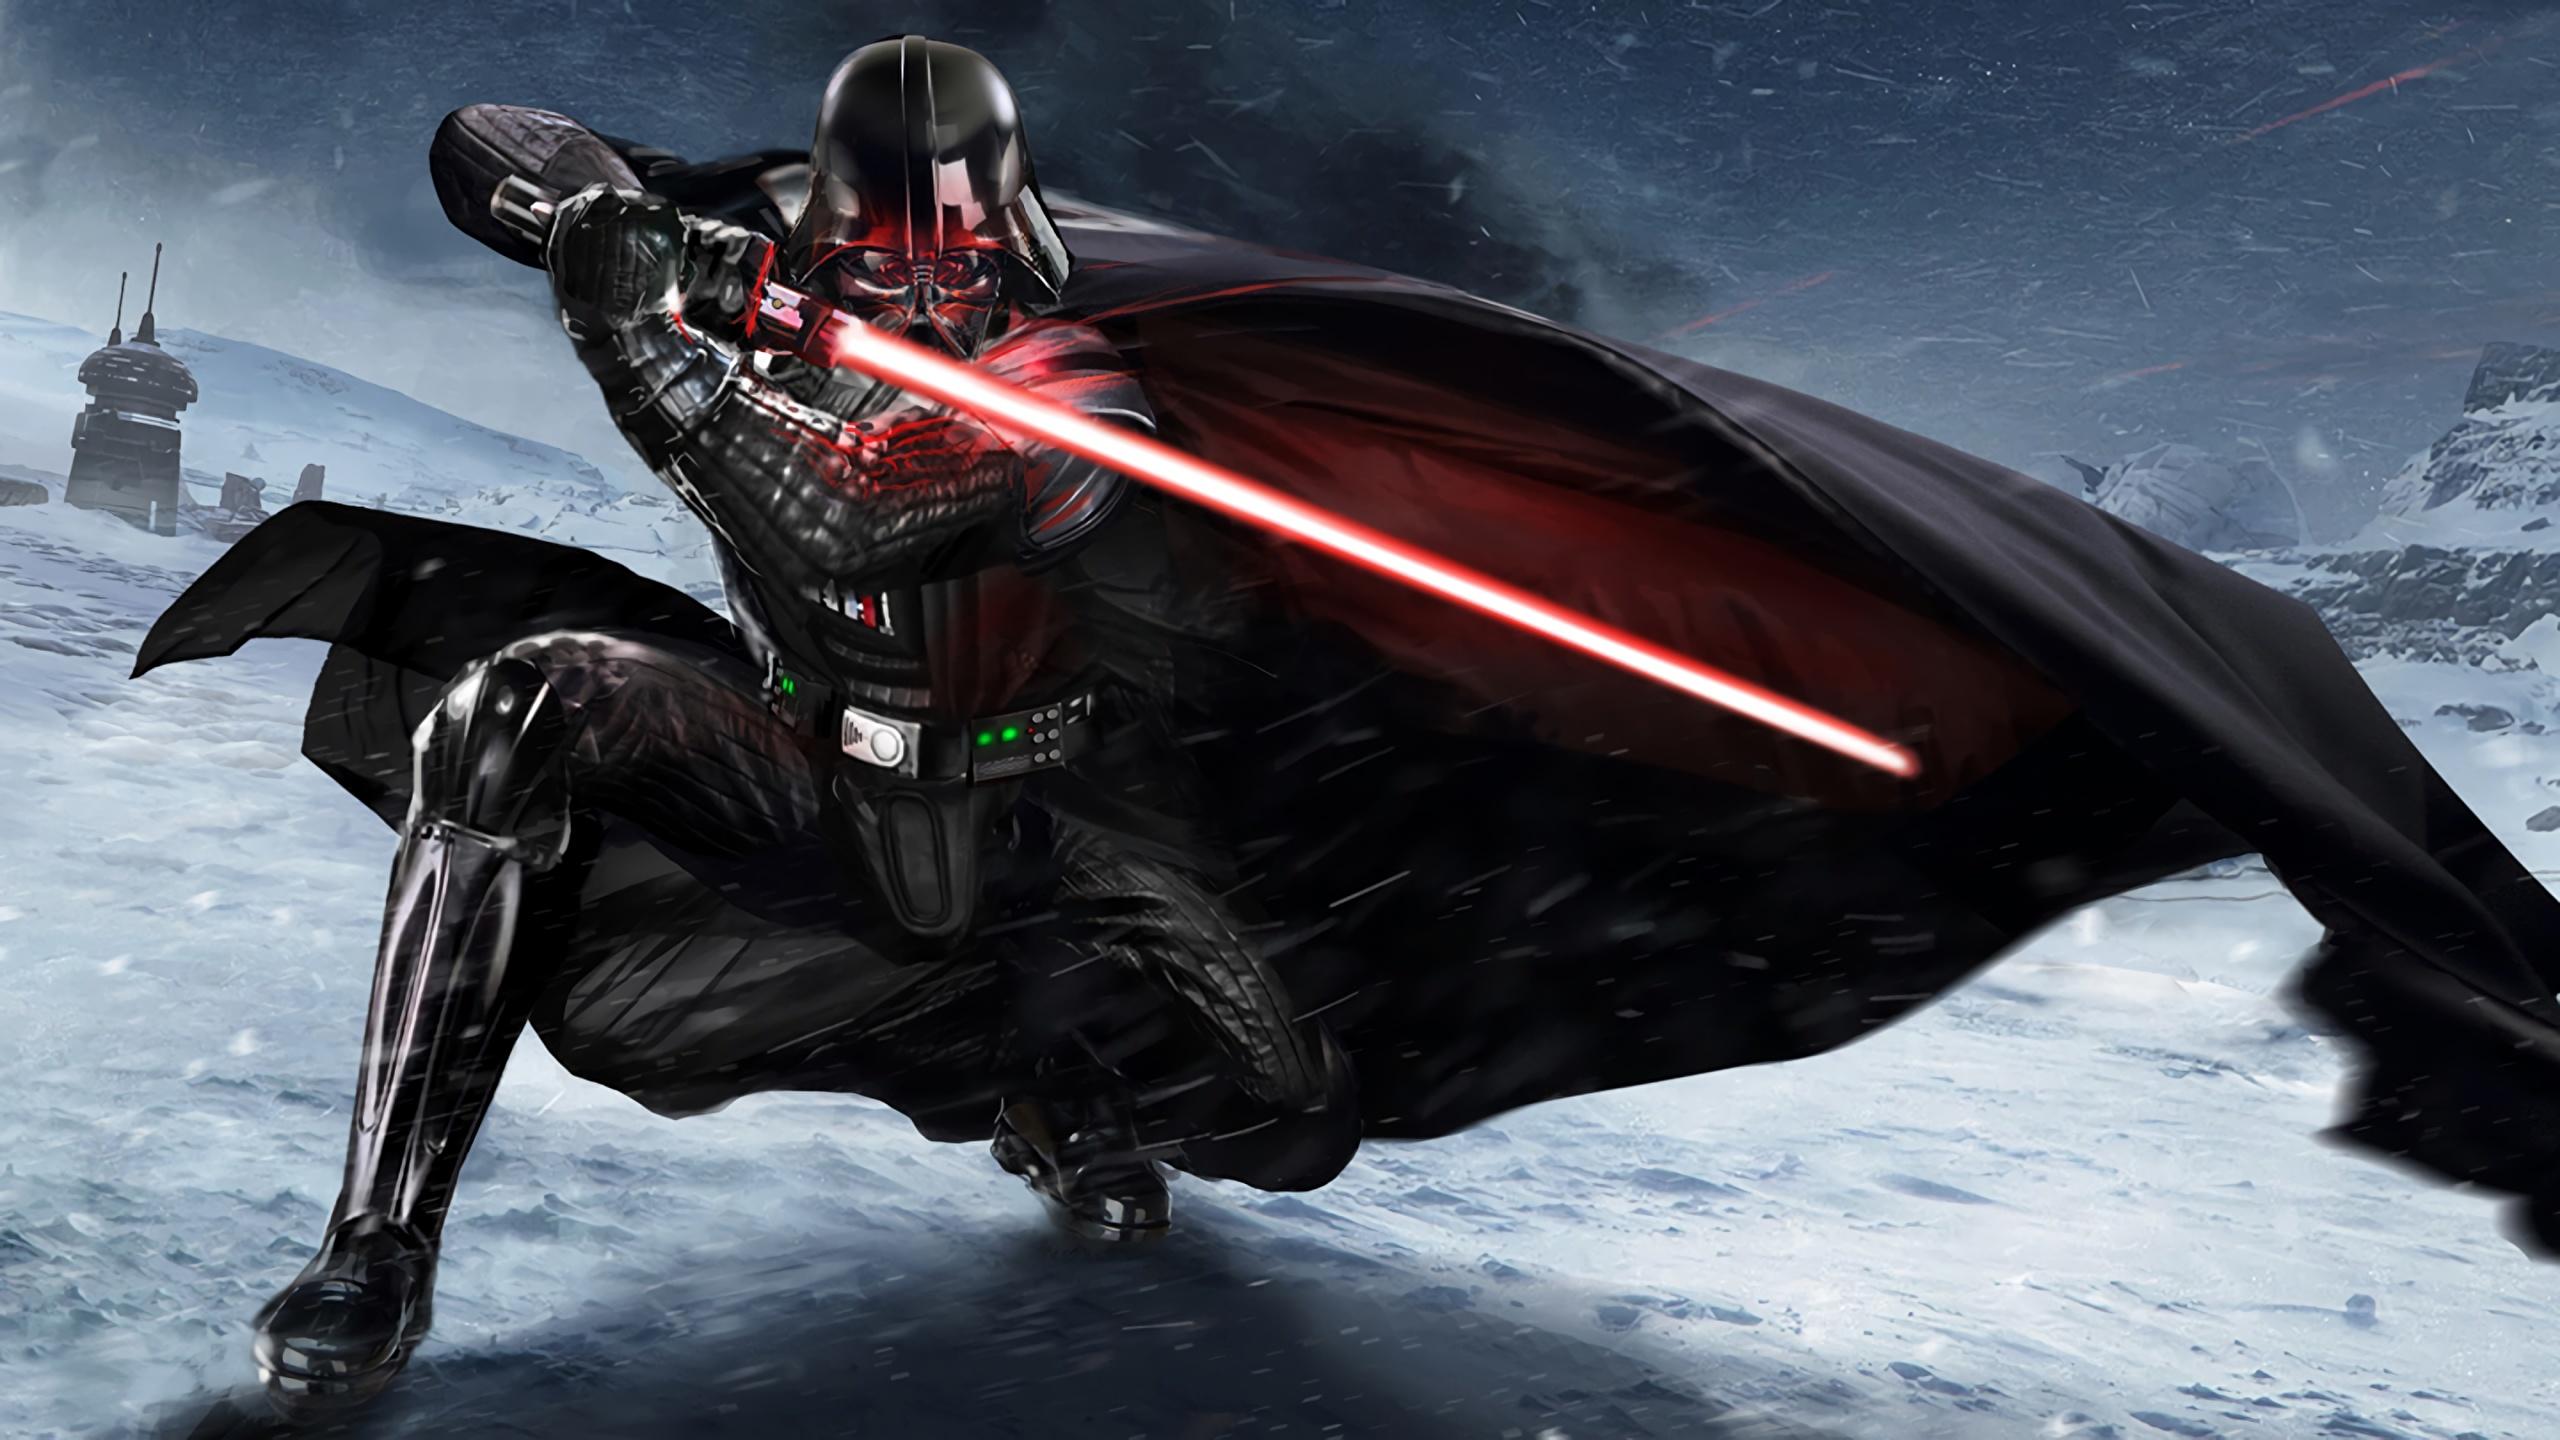 Wallpaper Darth Vader Star Wars armour Swords 2560x1440